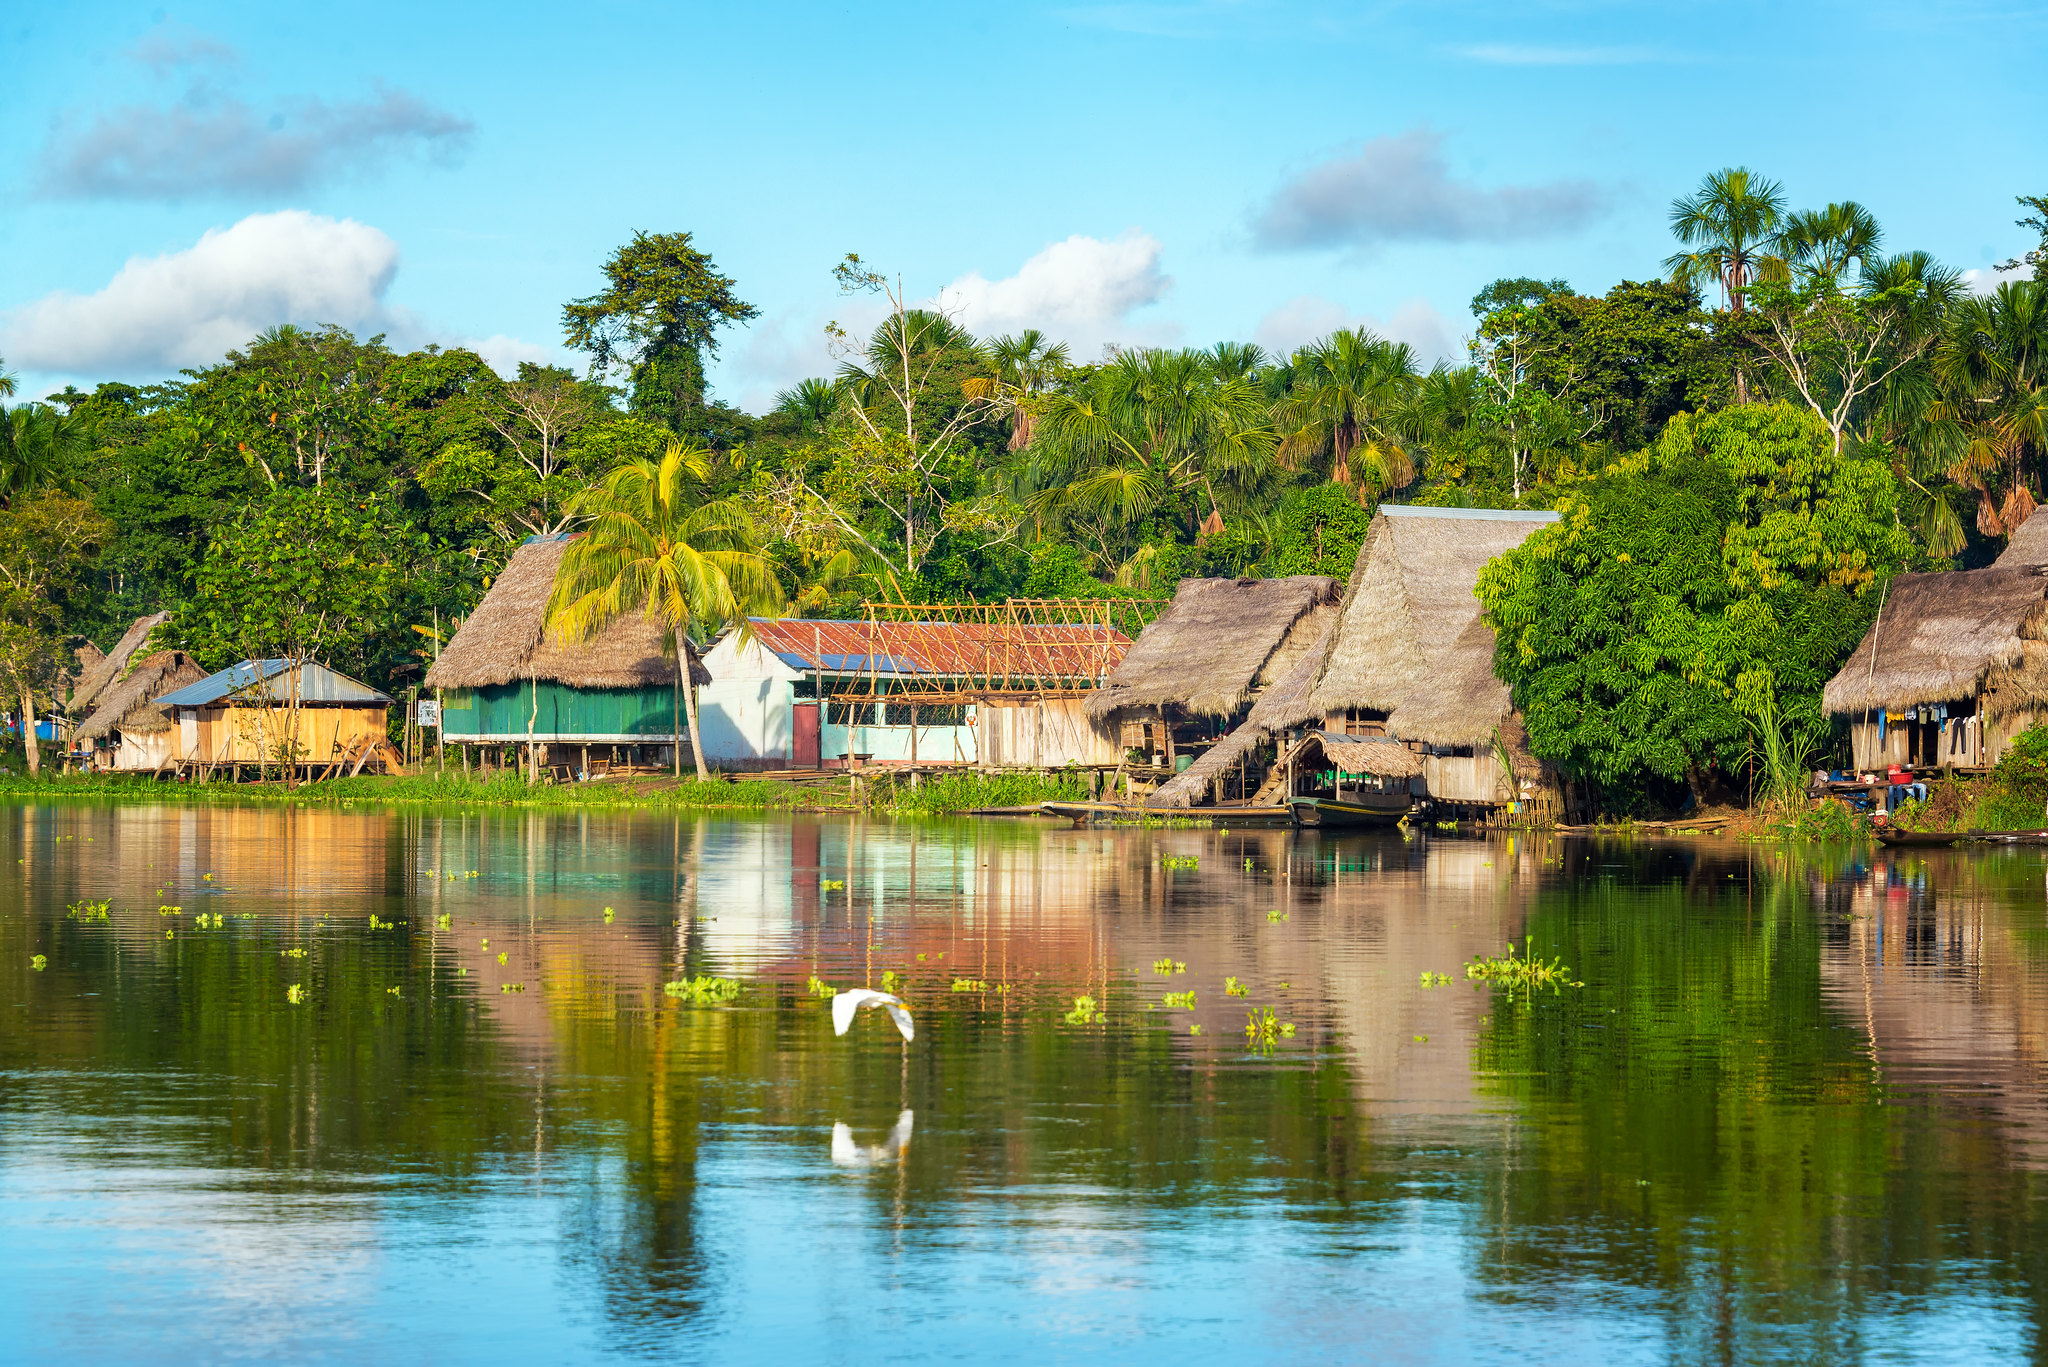 Maisons au bord de la rivière Yanayacu, Amazonie, Pérou © Discover Corps (CC BY-ND 2.0)